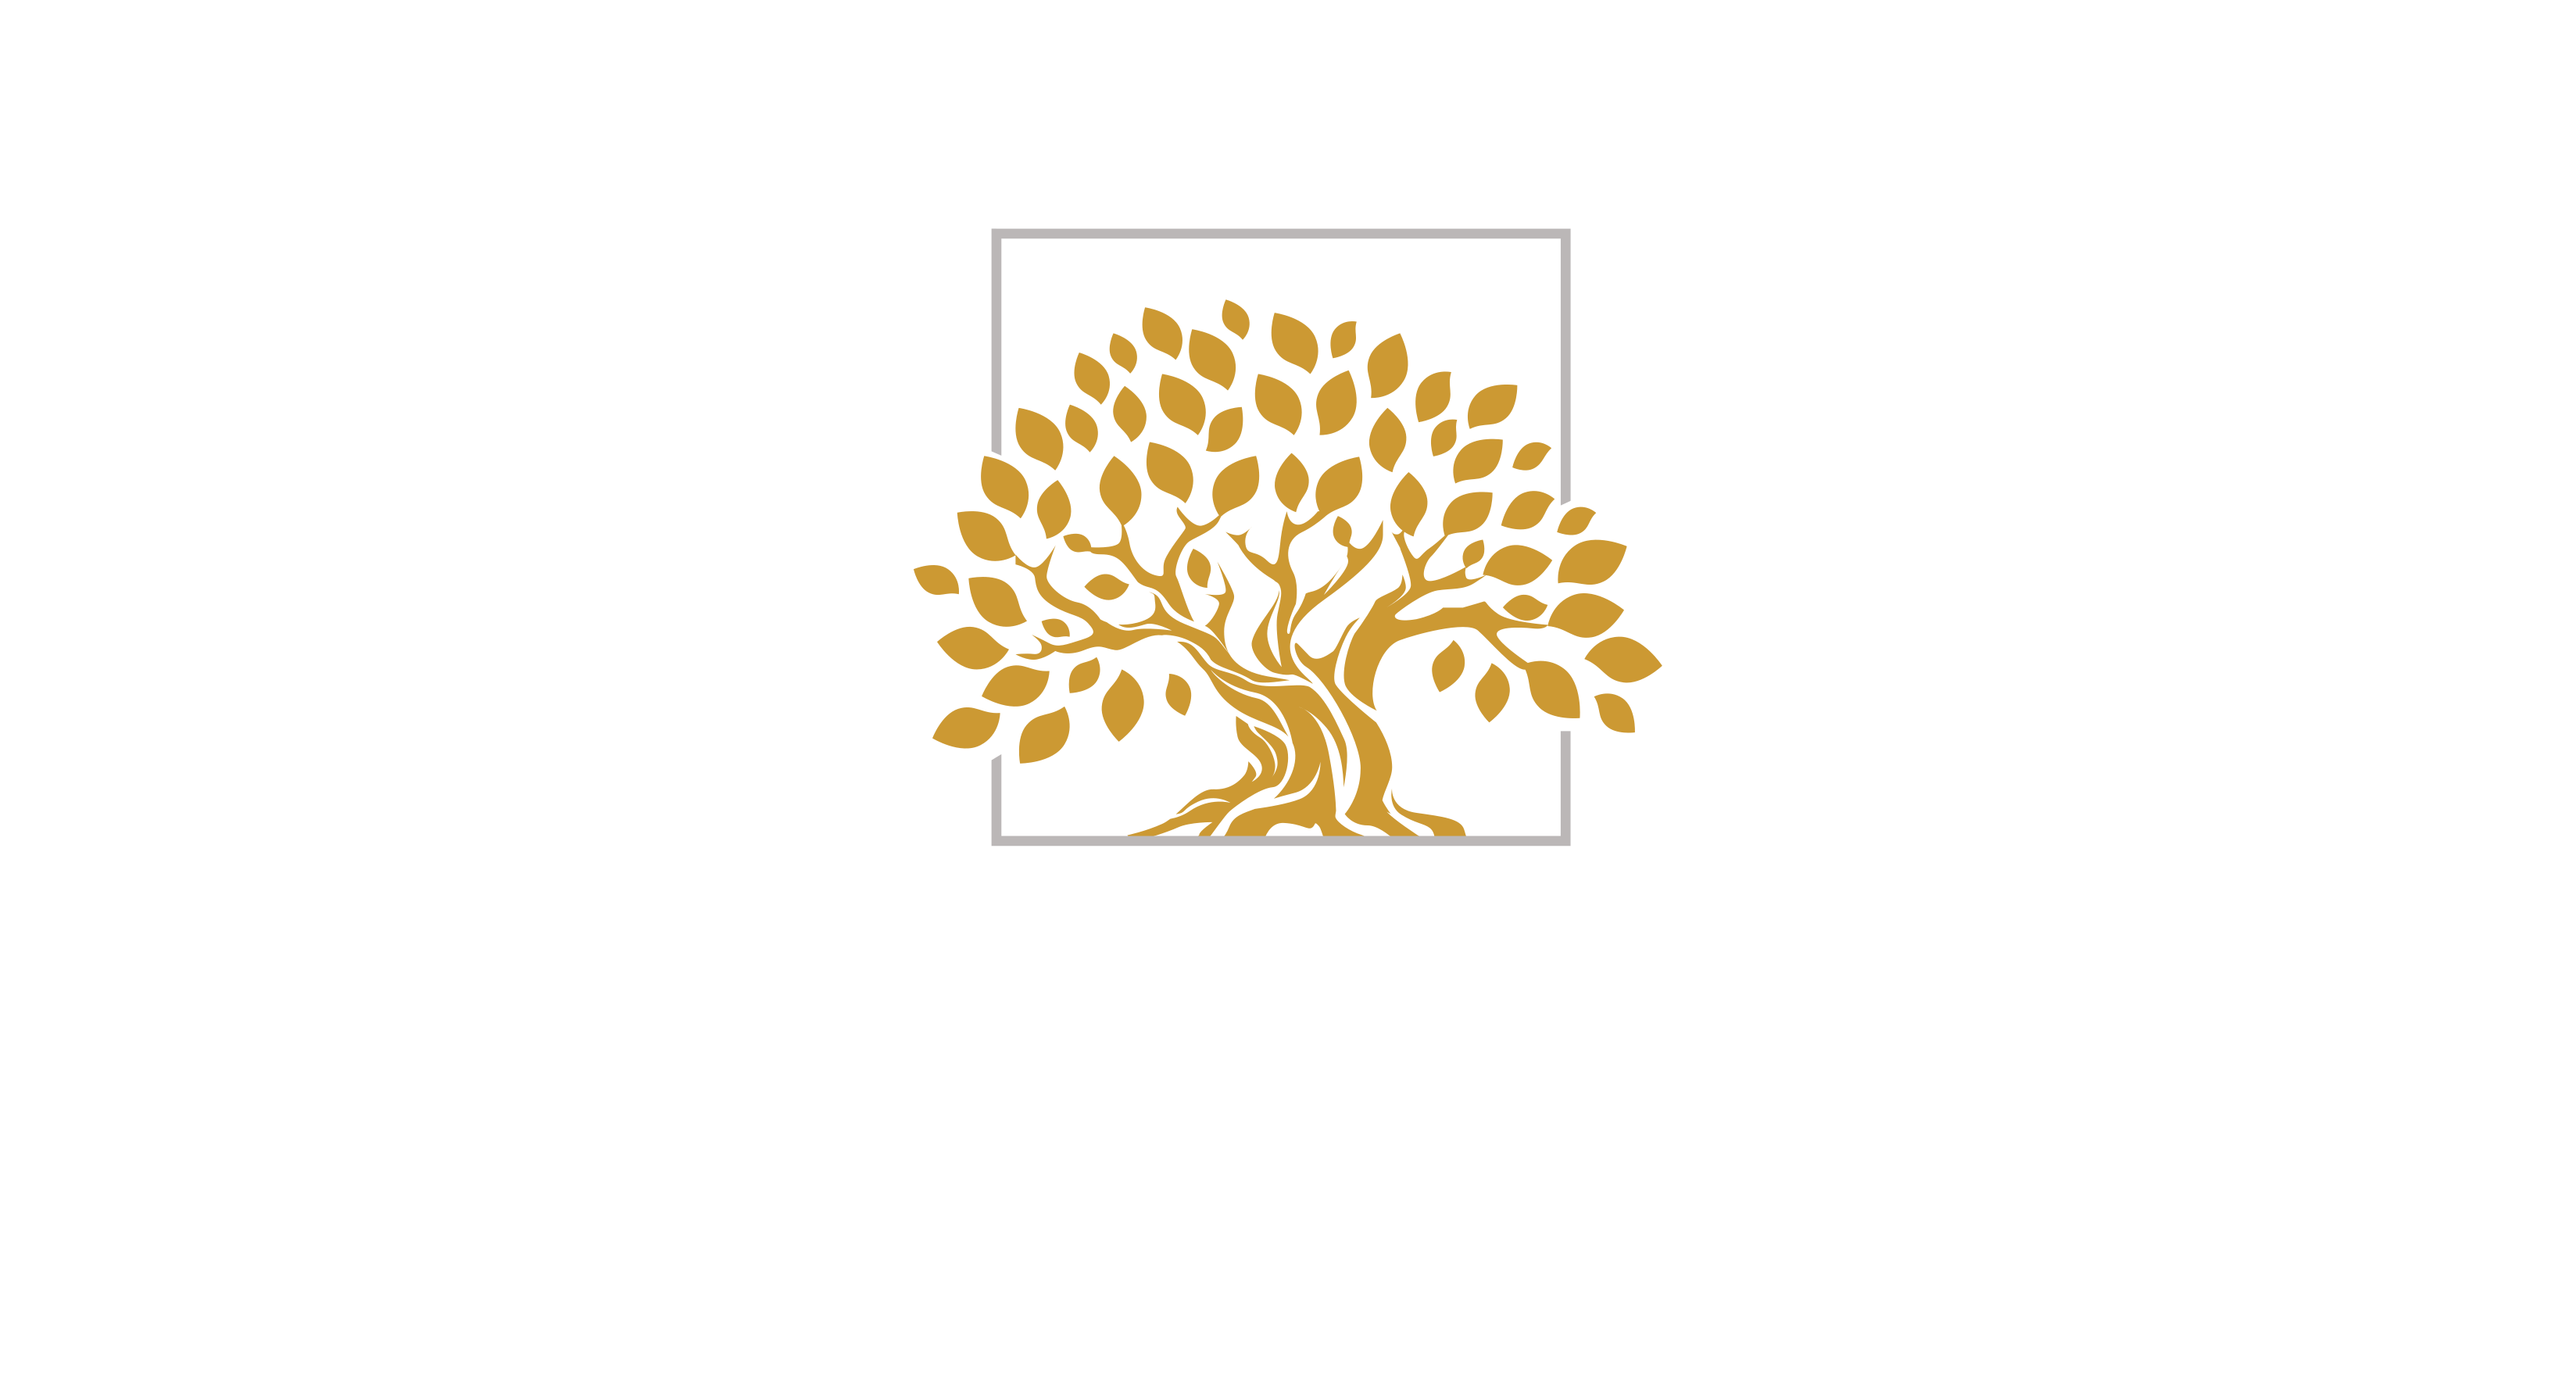 Psykolog Nanna Scherfig Straarup. Klinik for schematerapi og kognitiv terapi